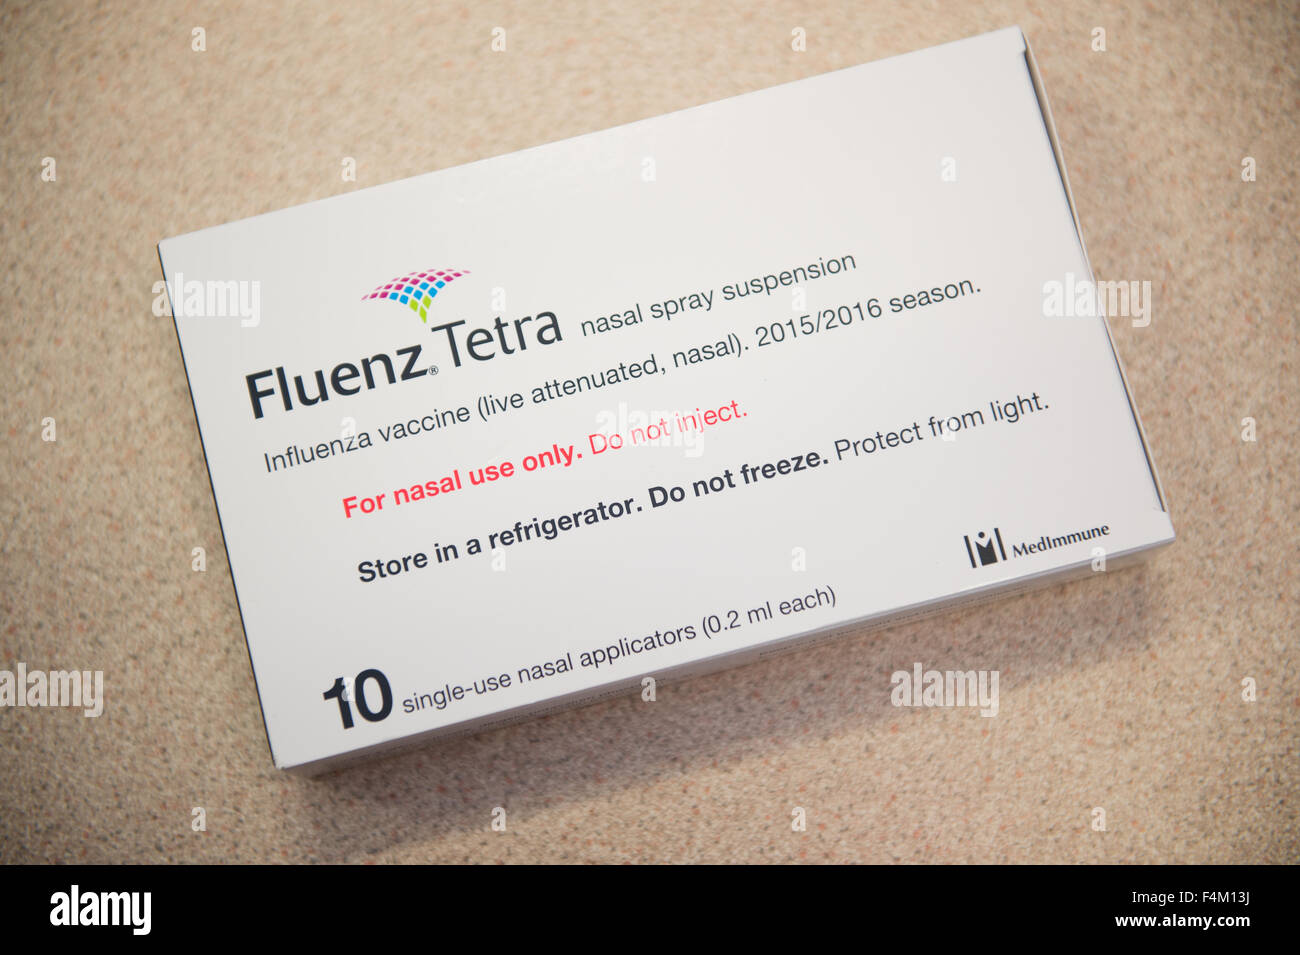 Un paquet paquet de 10 doses de grippe Grippe Tetra FLUENZ Vaccin antigrippal en pulvérisation nasale pour traiter les enfants en école primaire avant l'hiver 2105/2106 , Royaume-Uni Banque D'Images